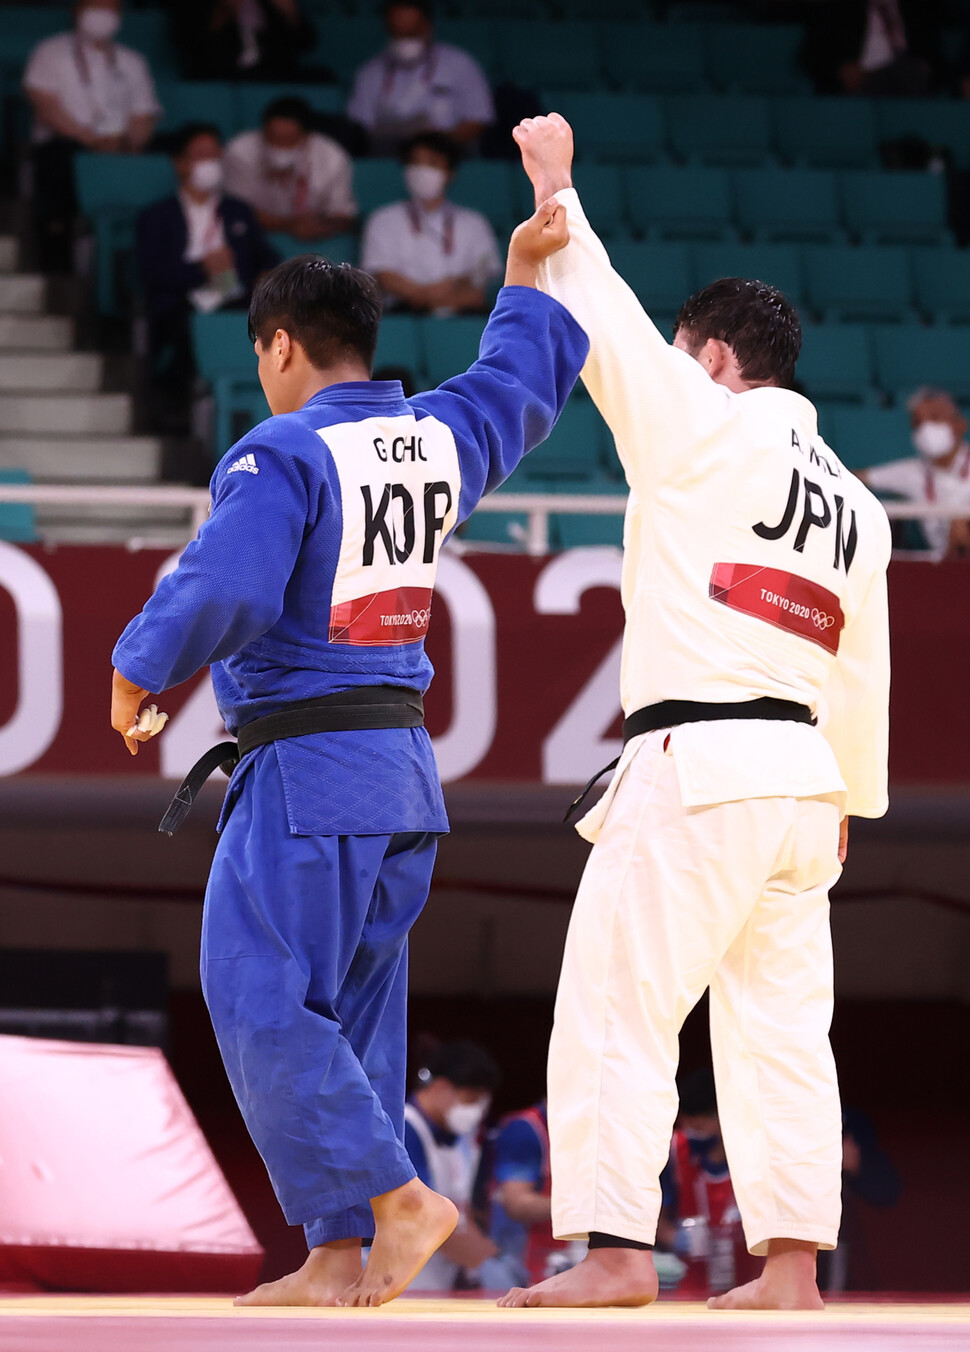 2011年7月29日に東京の武道館で開催された東京オリンピックの男子100kg級柔道クラス決勝で日本のアーロンウルフに敗れた後、韓国の船JoGooがウルフの手を上げます。 朗報です。